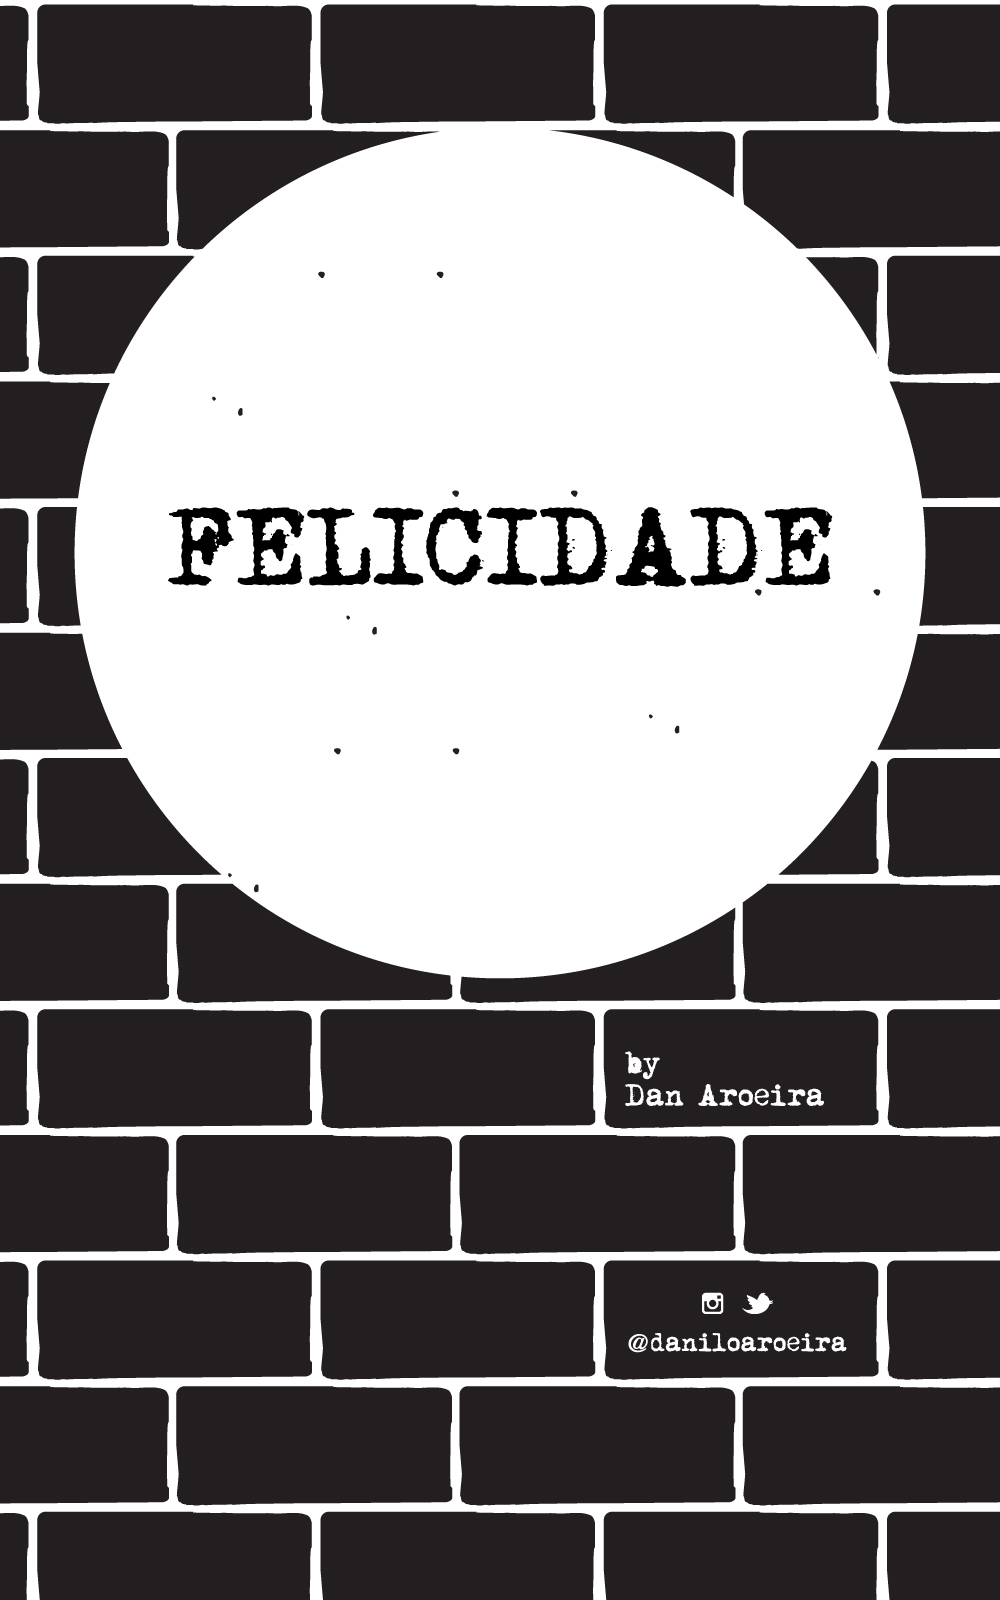 Felicidade - cover by Dan Aroeira